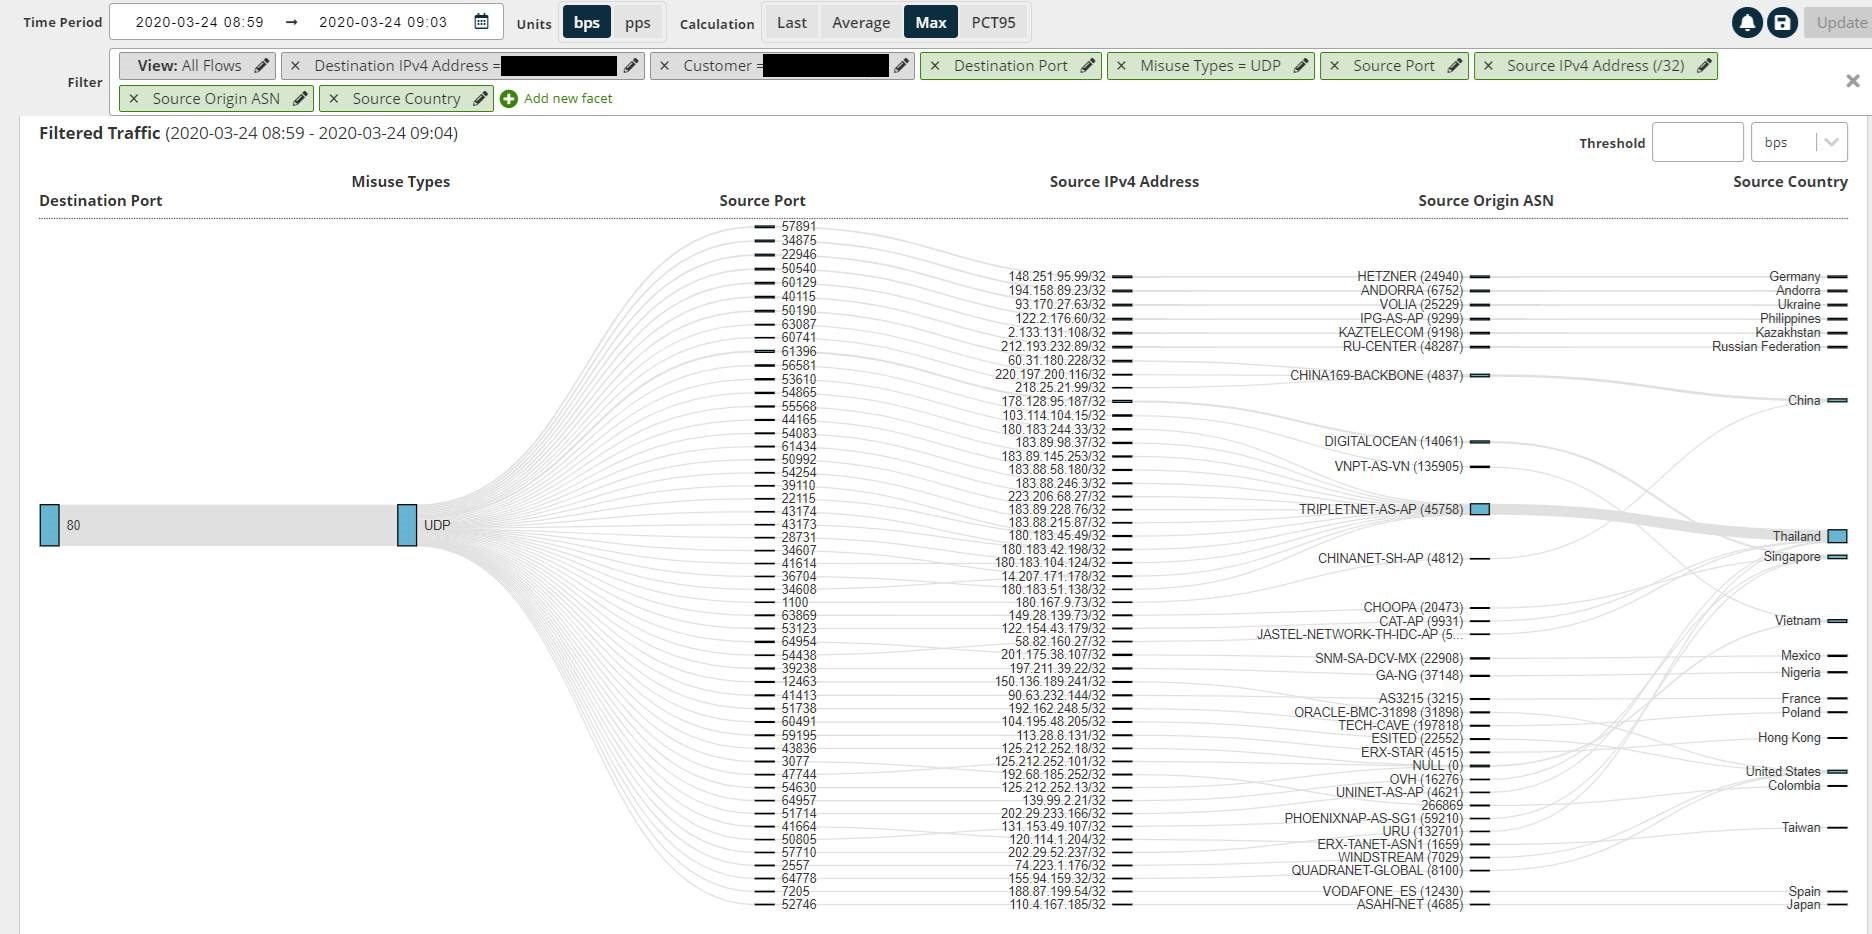 A screenshot of a DDoS report